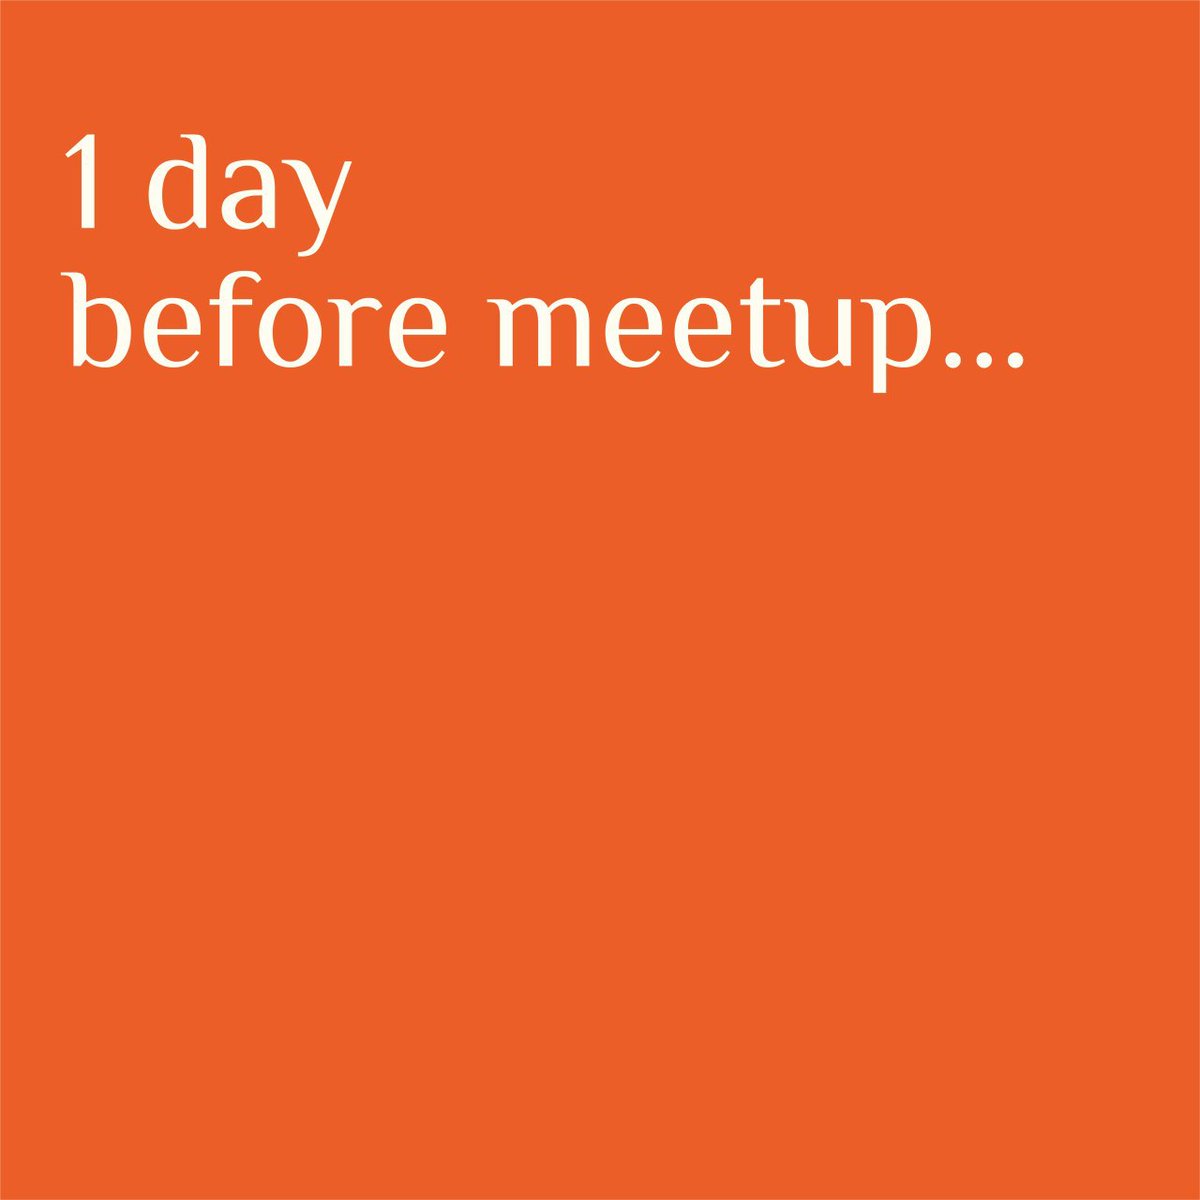 Life of an  #organizer (6/10).  #Meetups  #communities  #activities  #Anxiety  #speaker